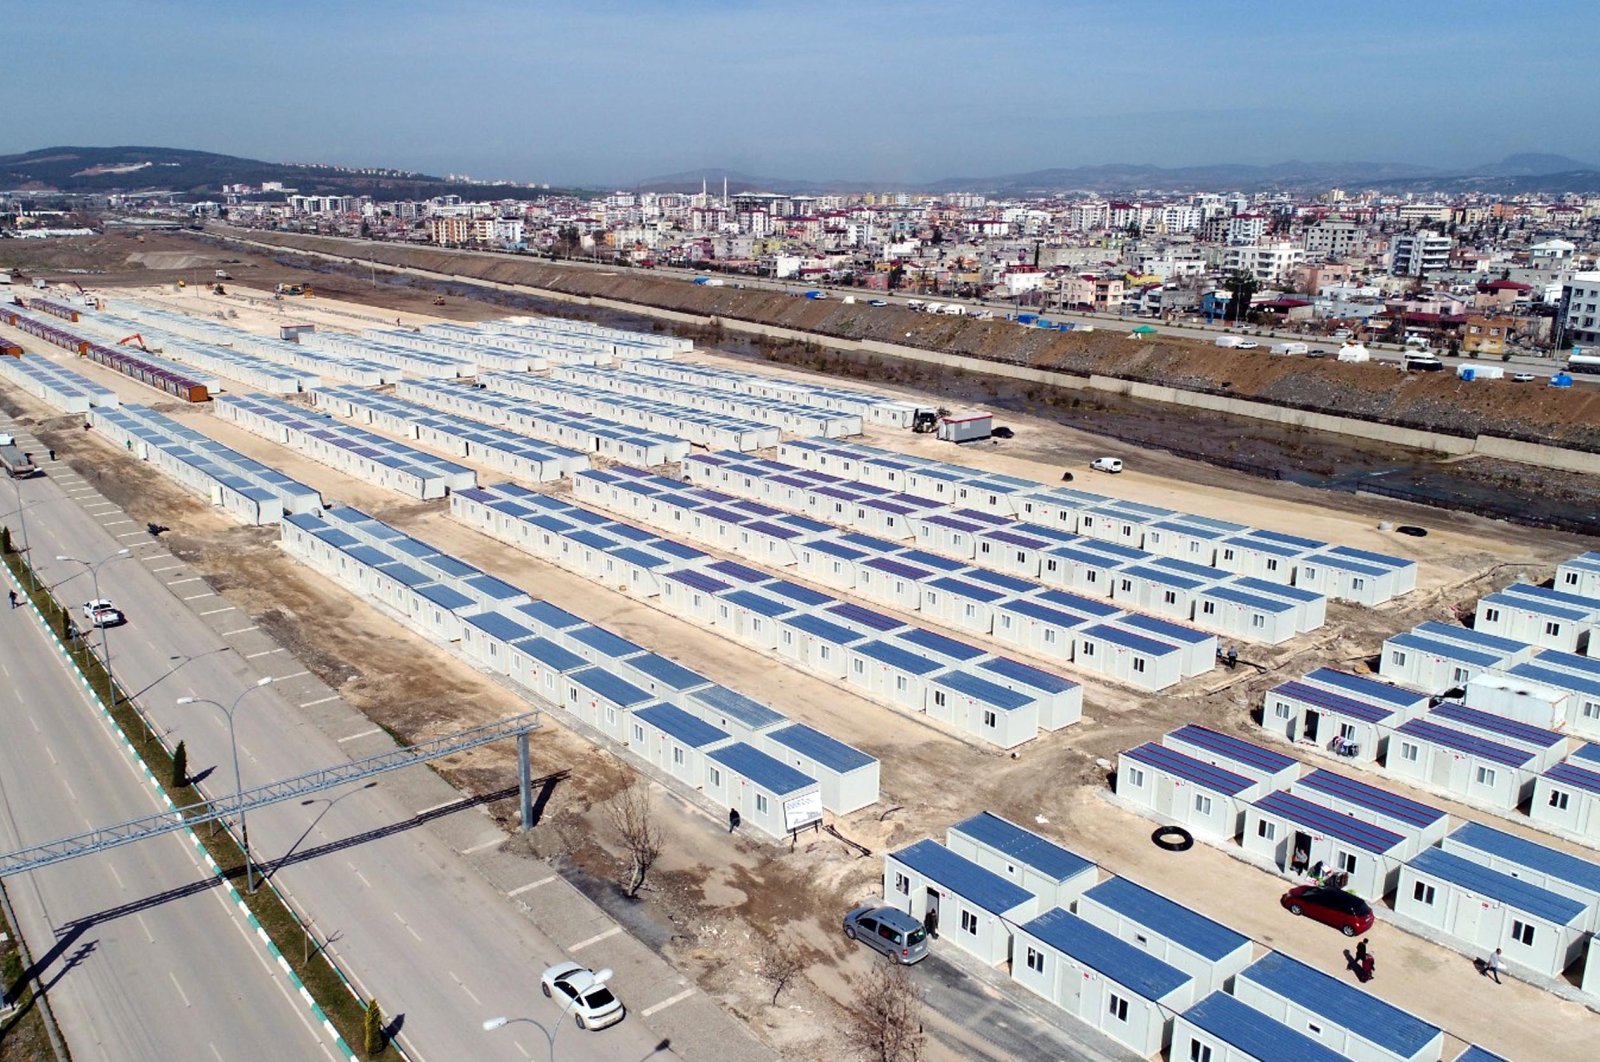 Türkiye mendirikan 450.000 tenda, kontainer setelah gempa: VP Oktay